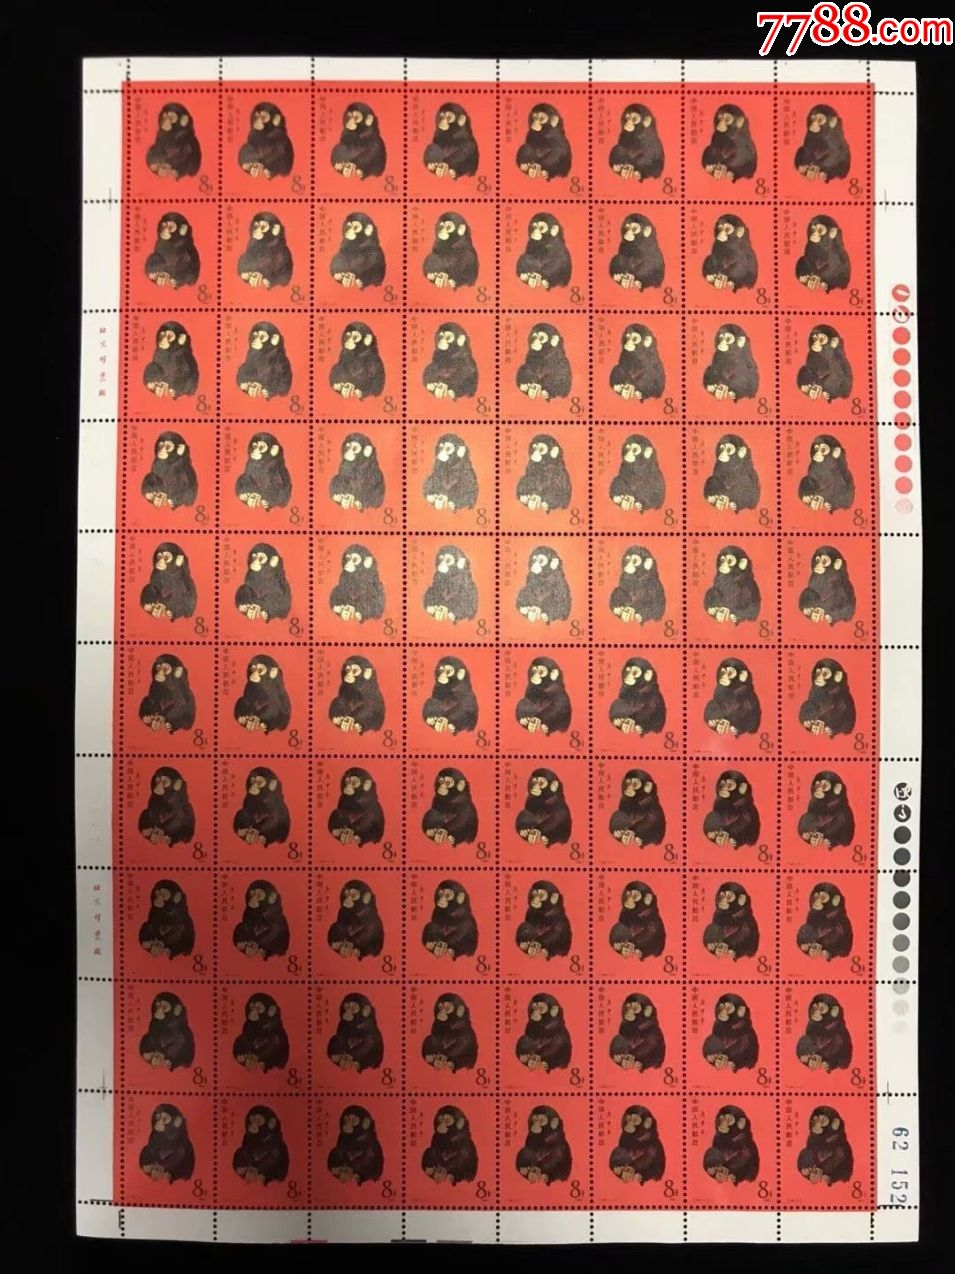 年猴版票庚申年猴票金猴高端精品稀有邮票最贵的邮票之一_价格1200000